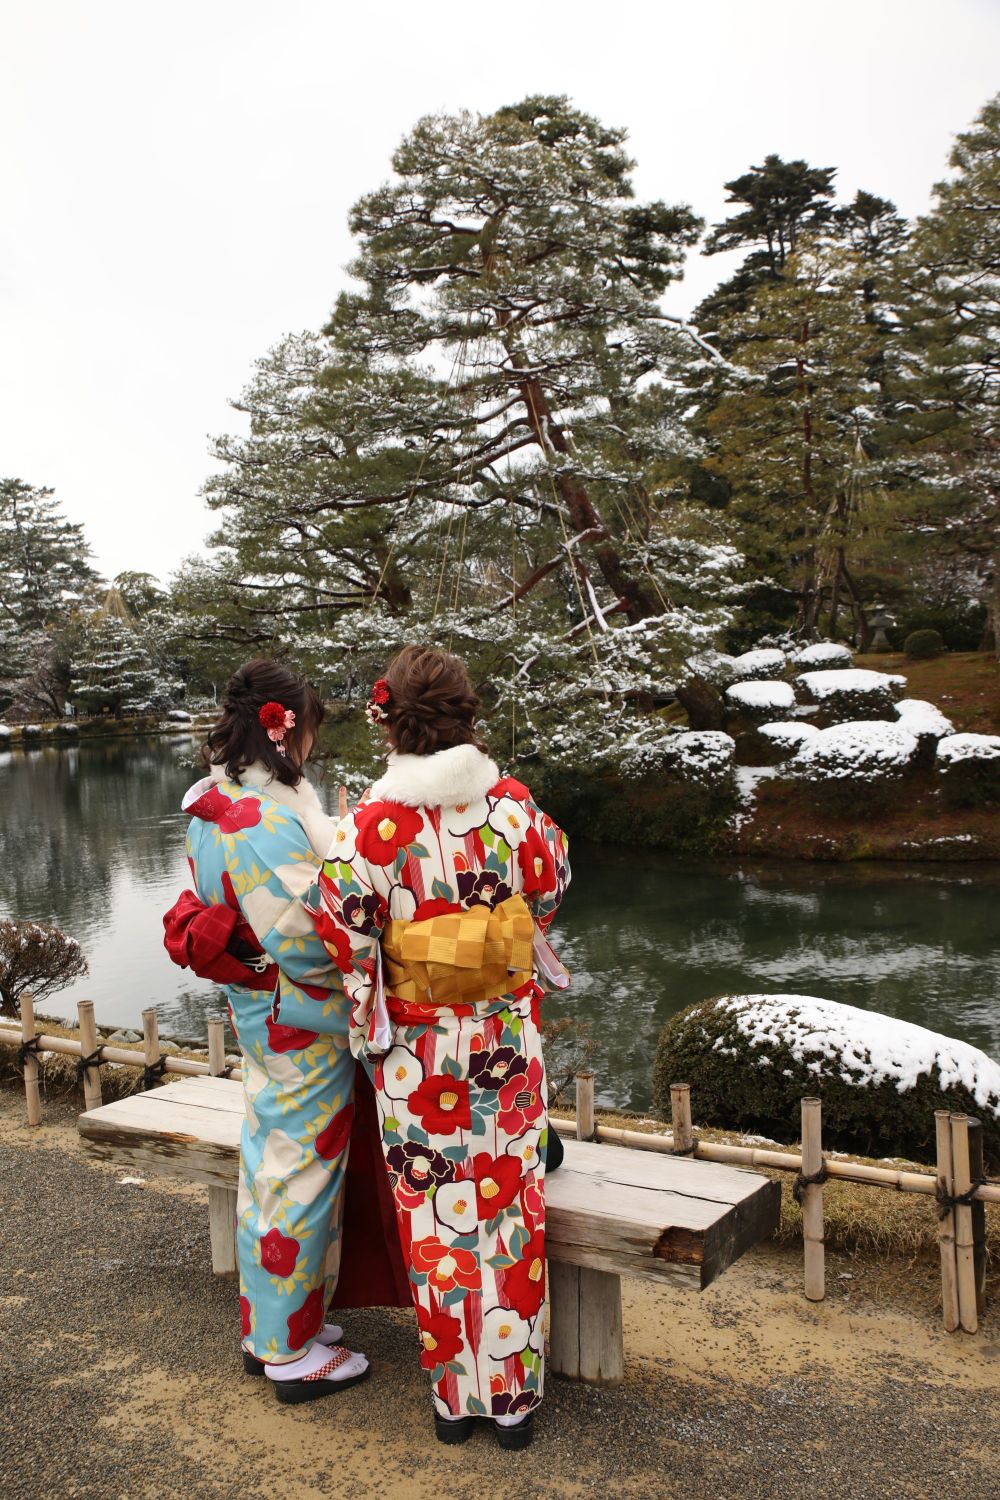 Japanerinnen im traditionellen Kimono bestaunen die Gartenkunst